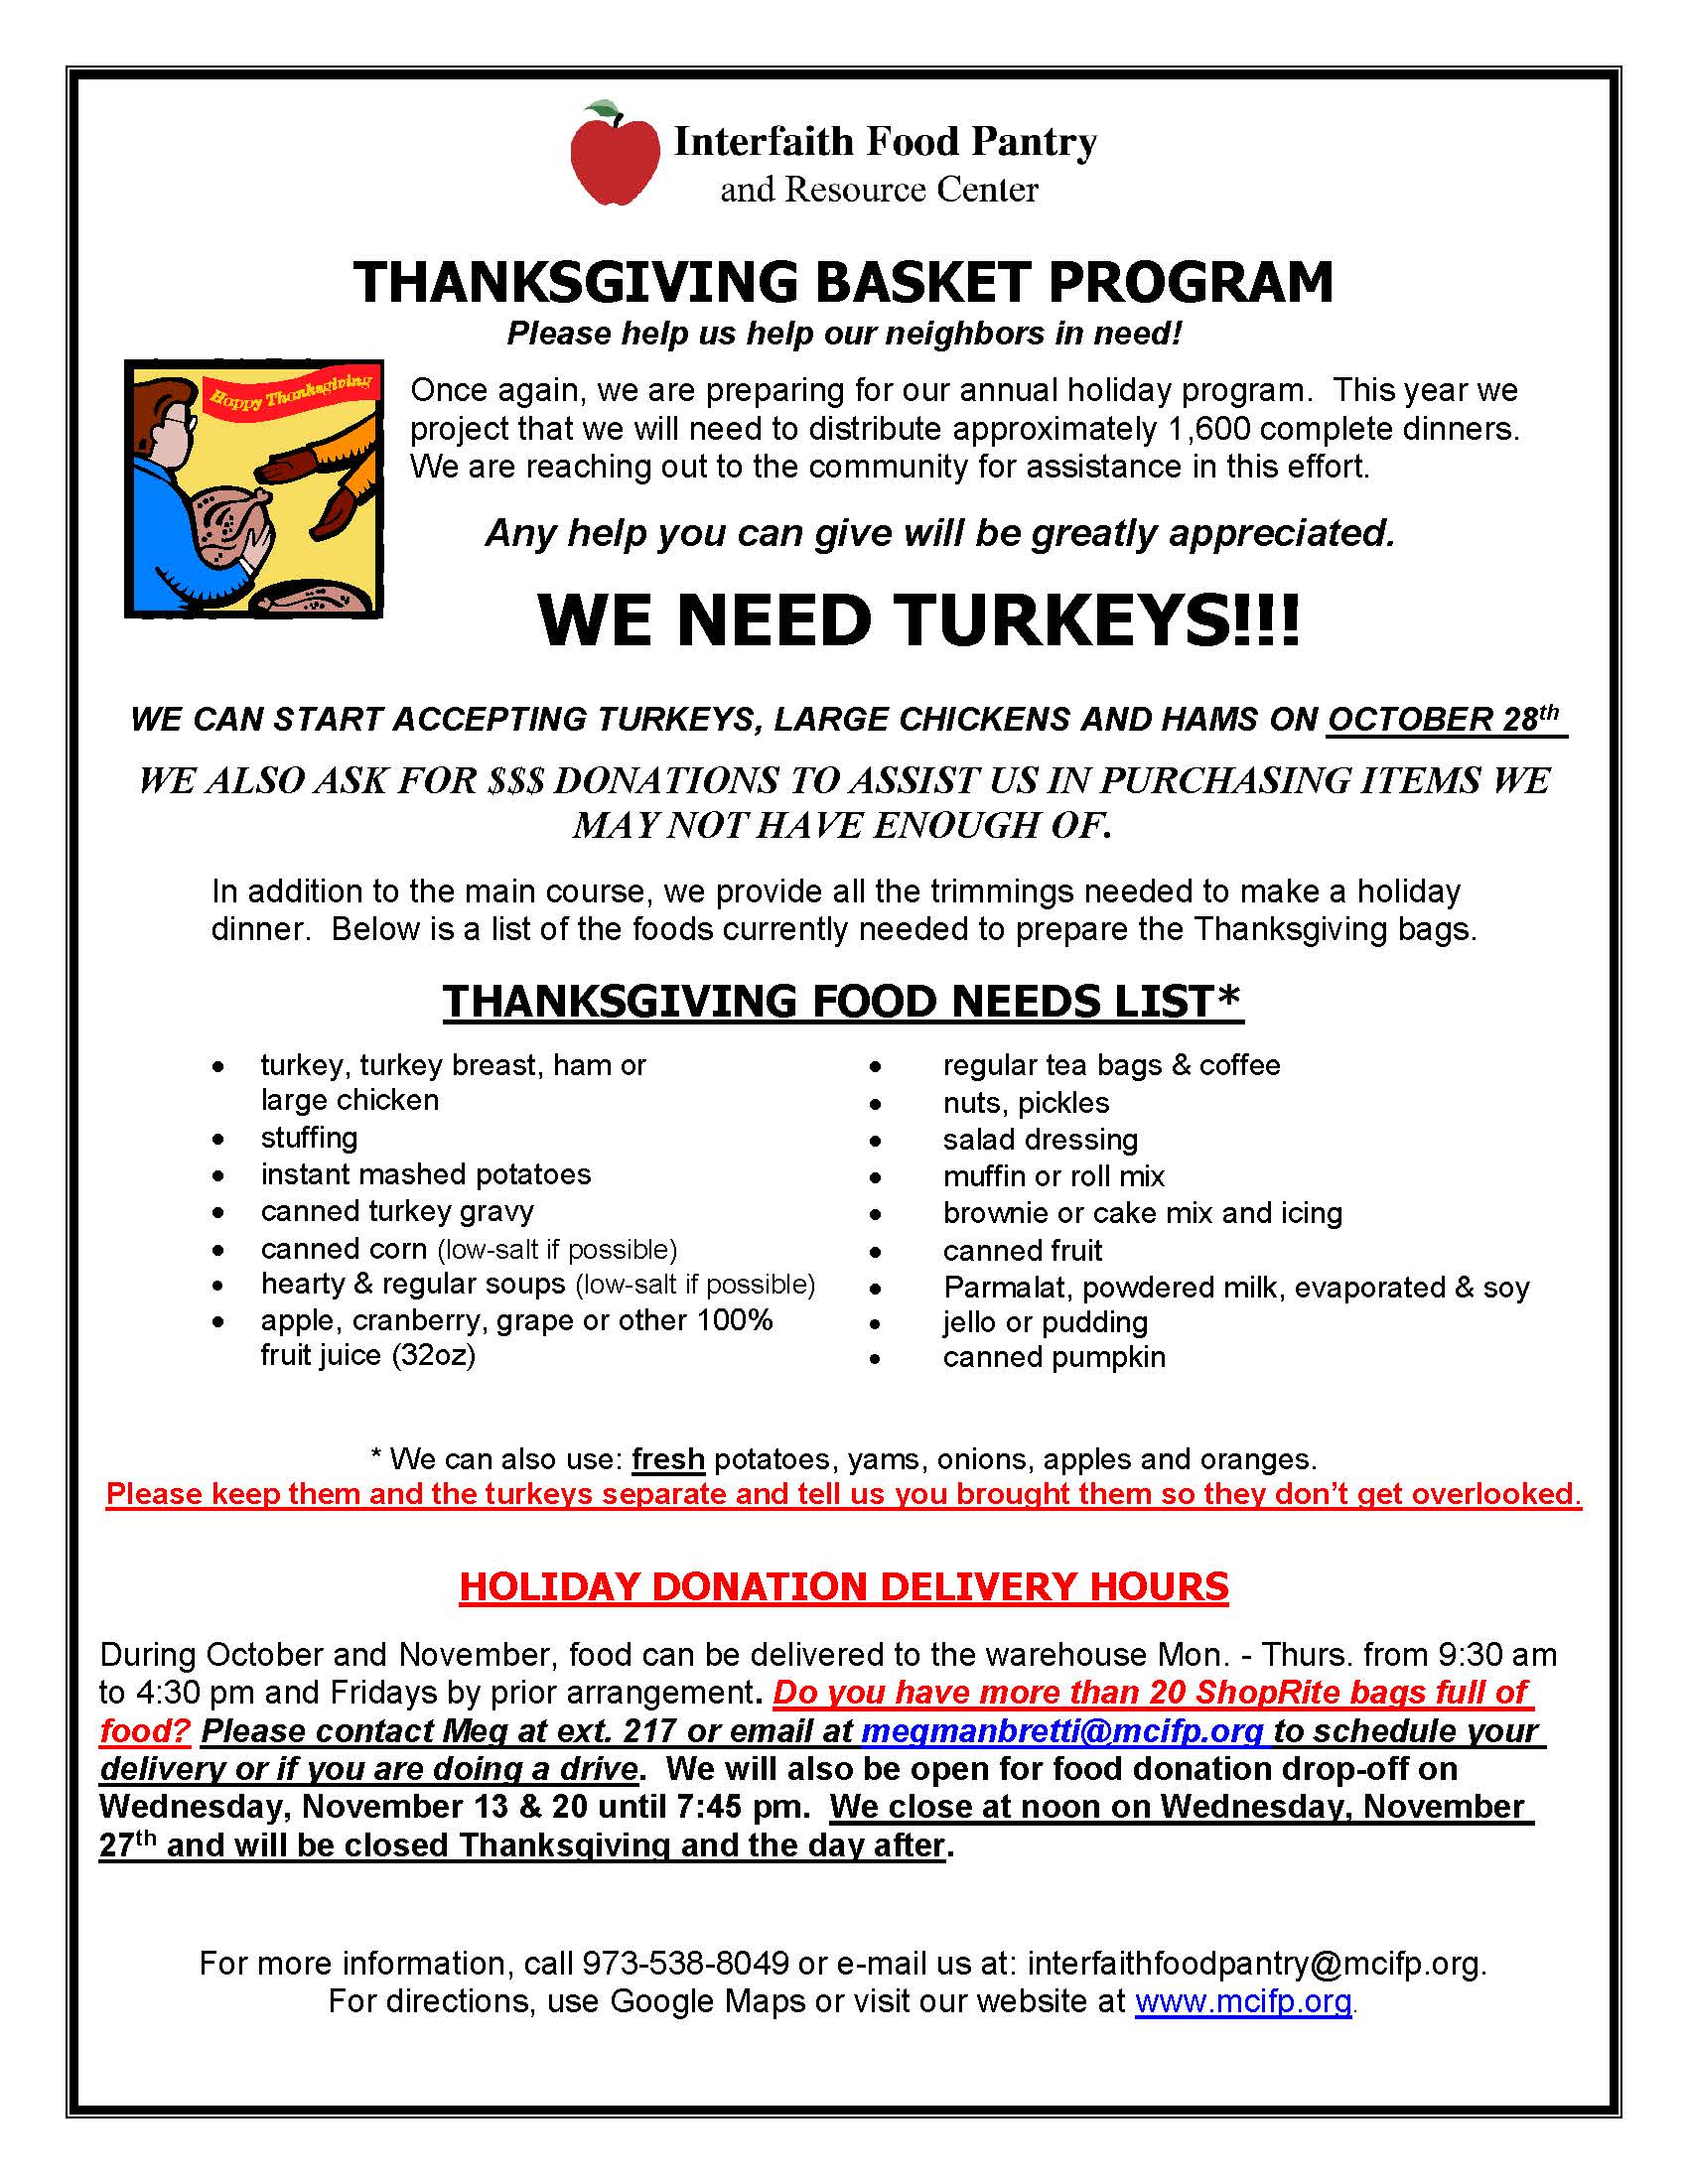 Thanksgiving Basket Program Interfaith Food Pantry